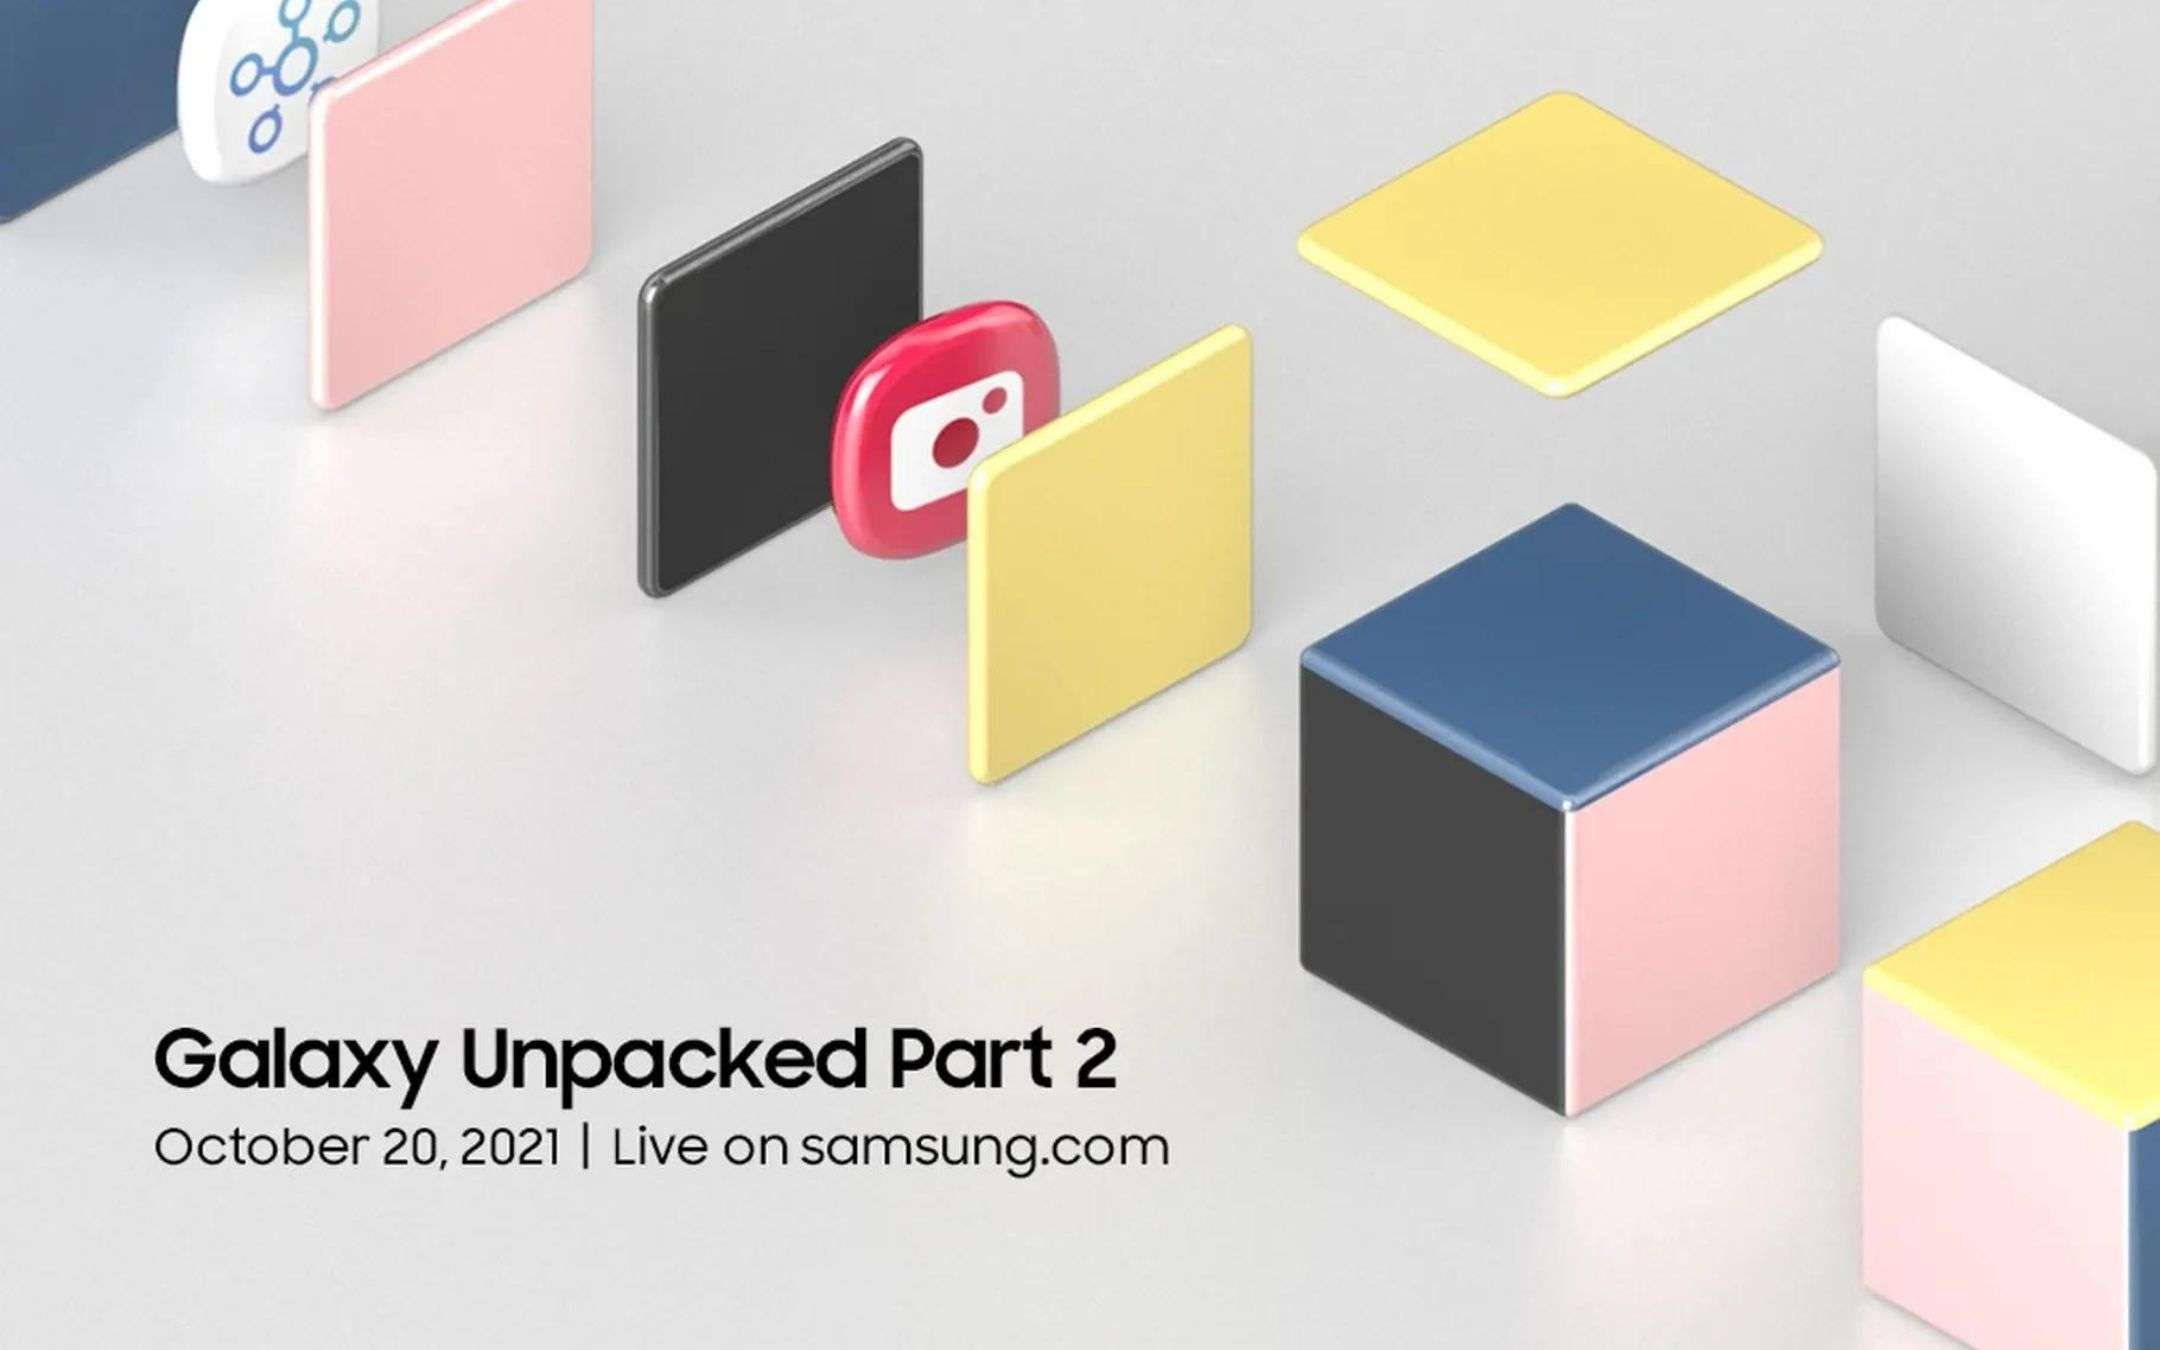 Samsung terrà il Galaxy Unpacked Part 2 il 20 ottobre